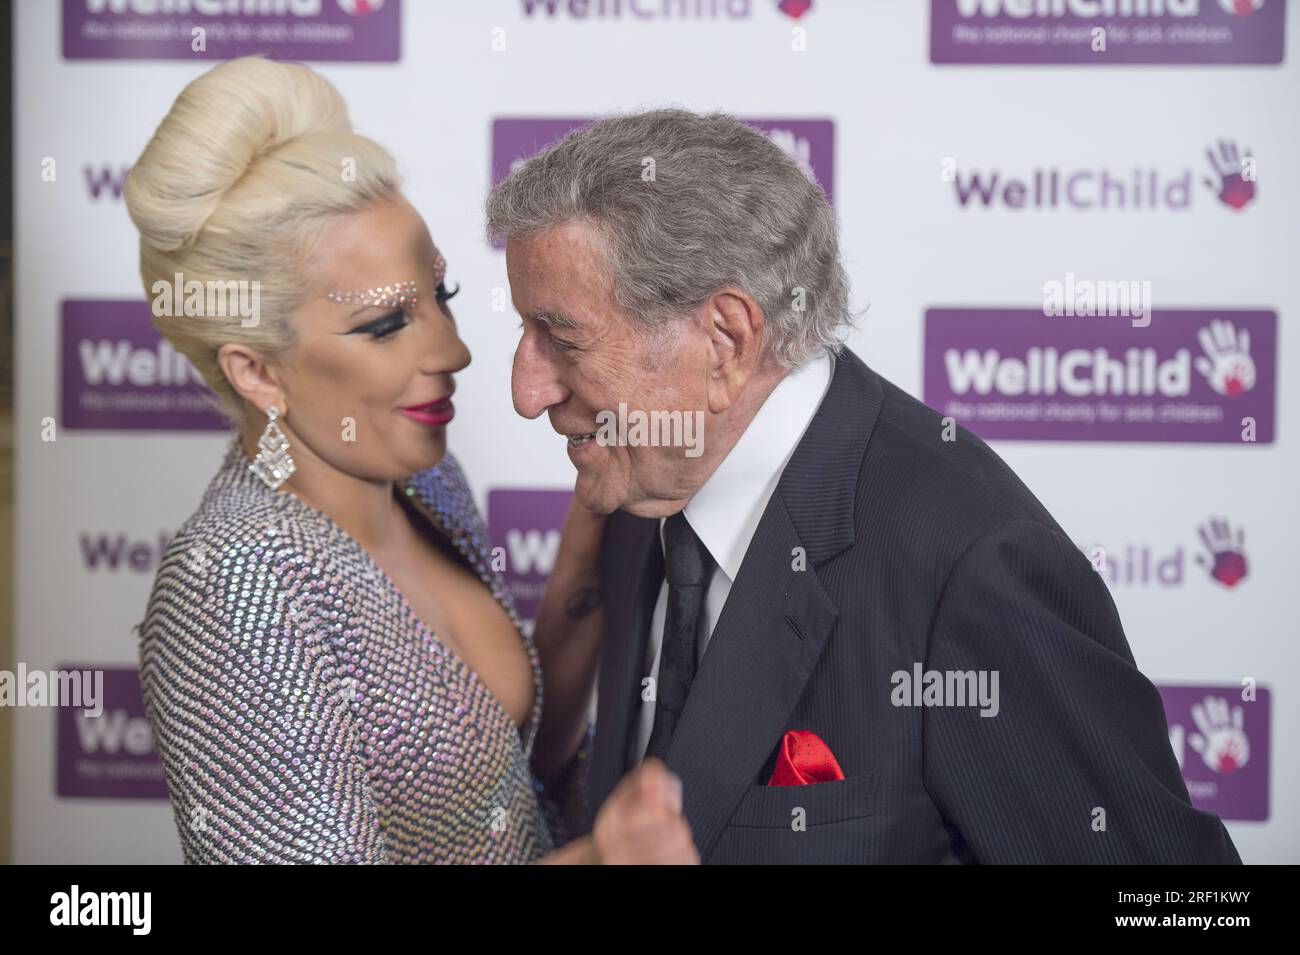 Ablage Foto vom 0. Oktober 06/2015 von Lady Gaga mit Tony Bennett, bevor sie bei einem Well Child Charity-Konzert in der Royal Albert Hall, London aufgetreten ist. Die US-Sängerin und Schauspielerin, 37, brach ihr Schweigen nach dem Tod ihres Freundes und langjährigen Mitarbeiters Tony Bennett, der am 21. Juli in seiner Heimatstadt New York im Alter von 96 Jahren starb. Gaga hat einen emotionalen Beitrag auf Instagram veröffentlicht und geschrieben: Ich werde meinen Freund für immer vermissen. Ich werde es vermissen, mit ihm zu singen, mit ihm aufzunehmen, mit ihm zu reden, zusammen auf der Bühne zu sein. Ausgabedatum: Montag, 31. Juli 2023. Stockfoto